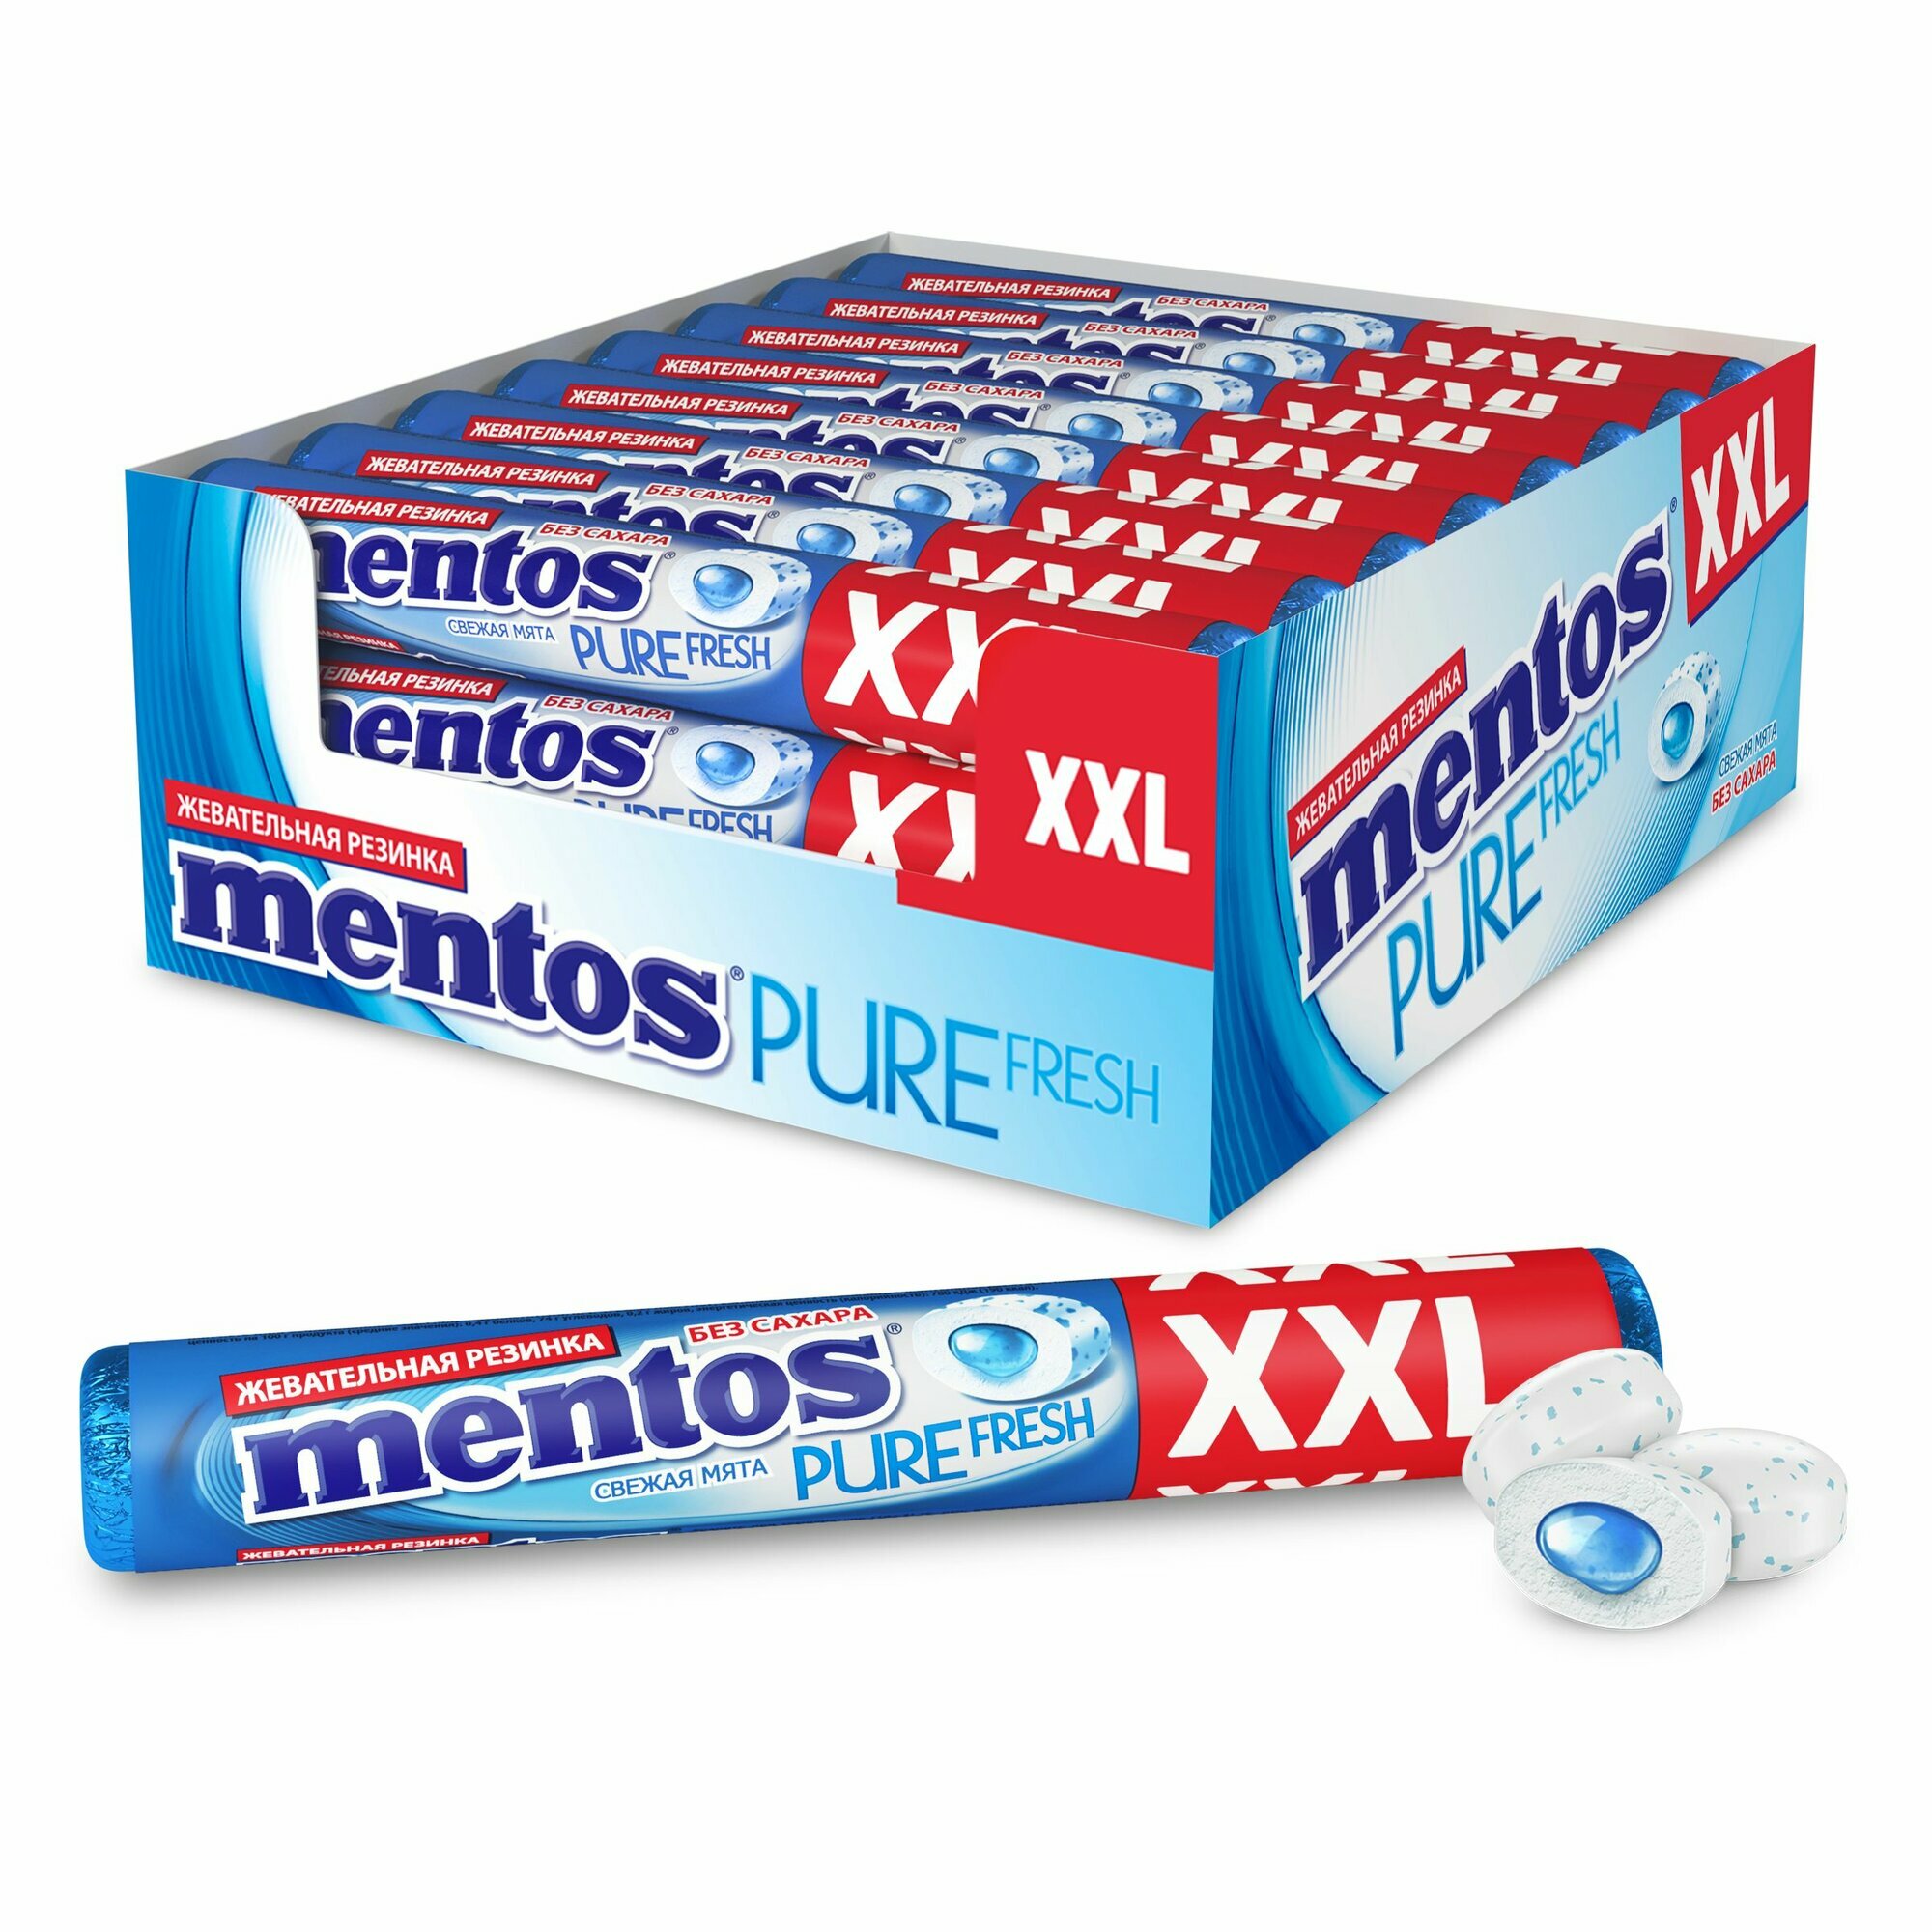 Жевательная резинка Mentos Pure Fresh вкус Свежая мята XXL, 24 шт по 23,3 г